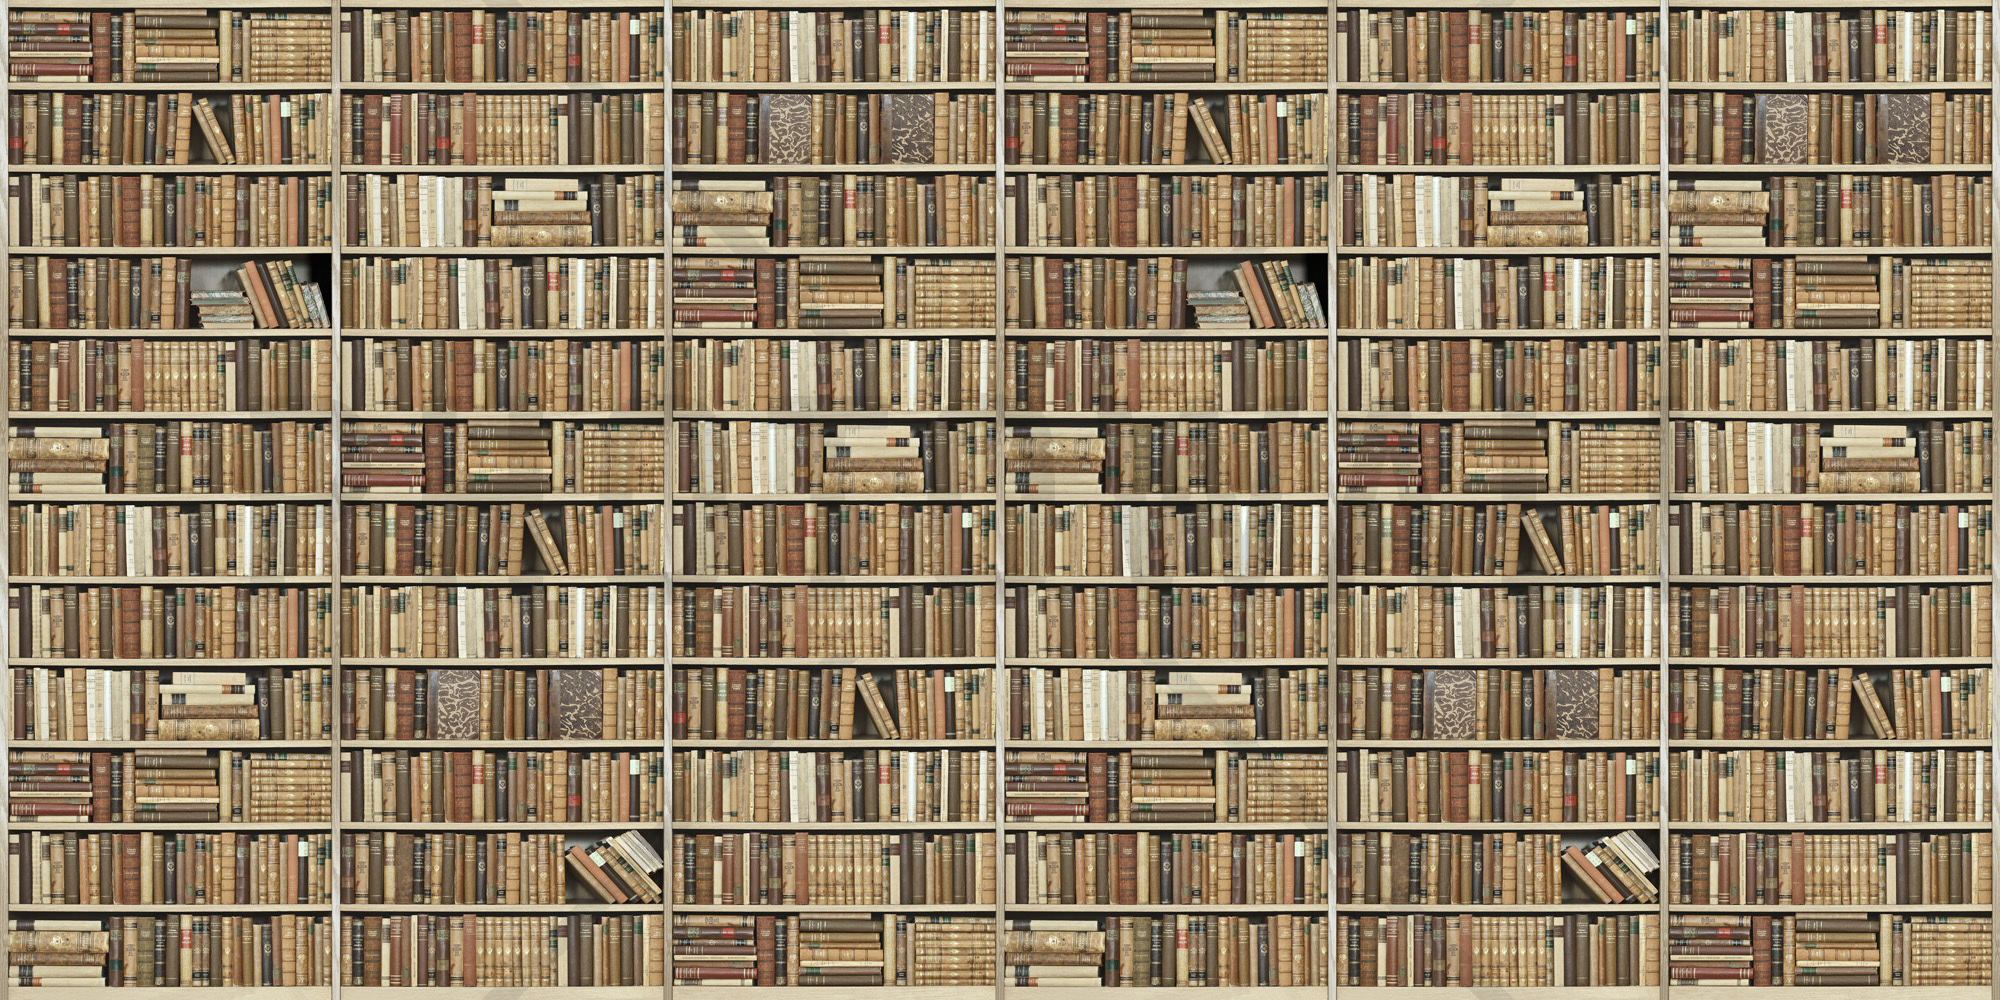 Bookshelf - Wooden - Long - Beige - Wall Mural & Photo Wallpaper